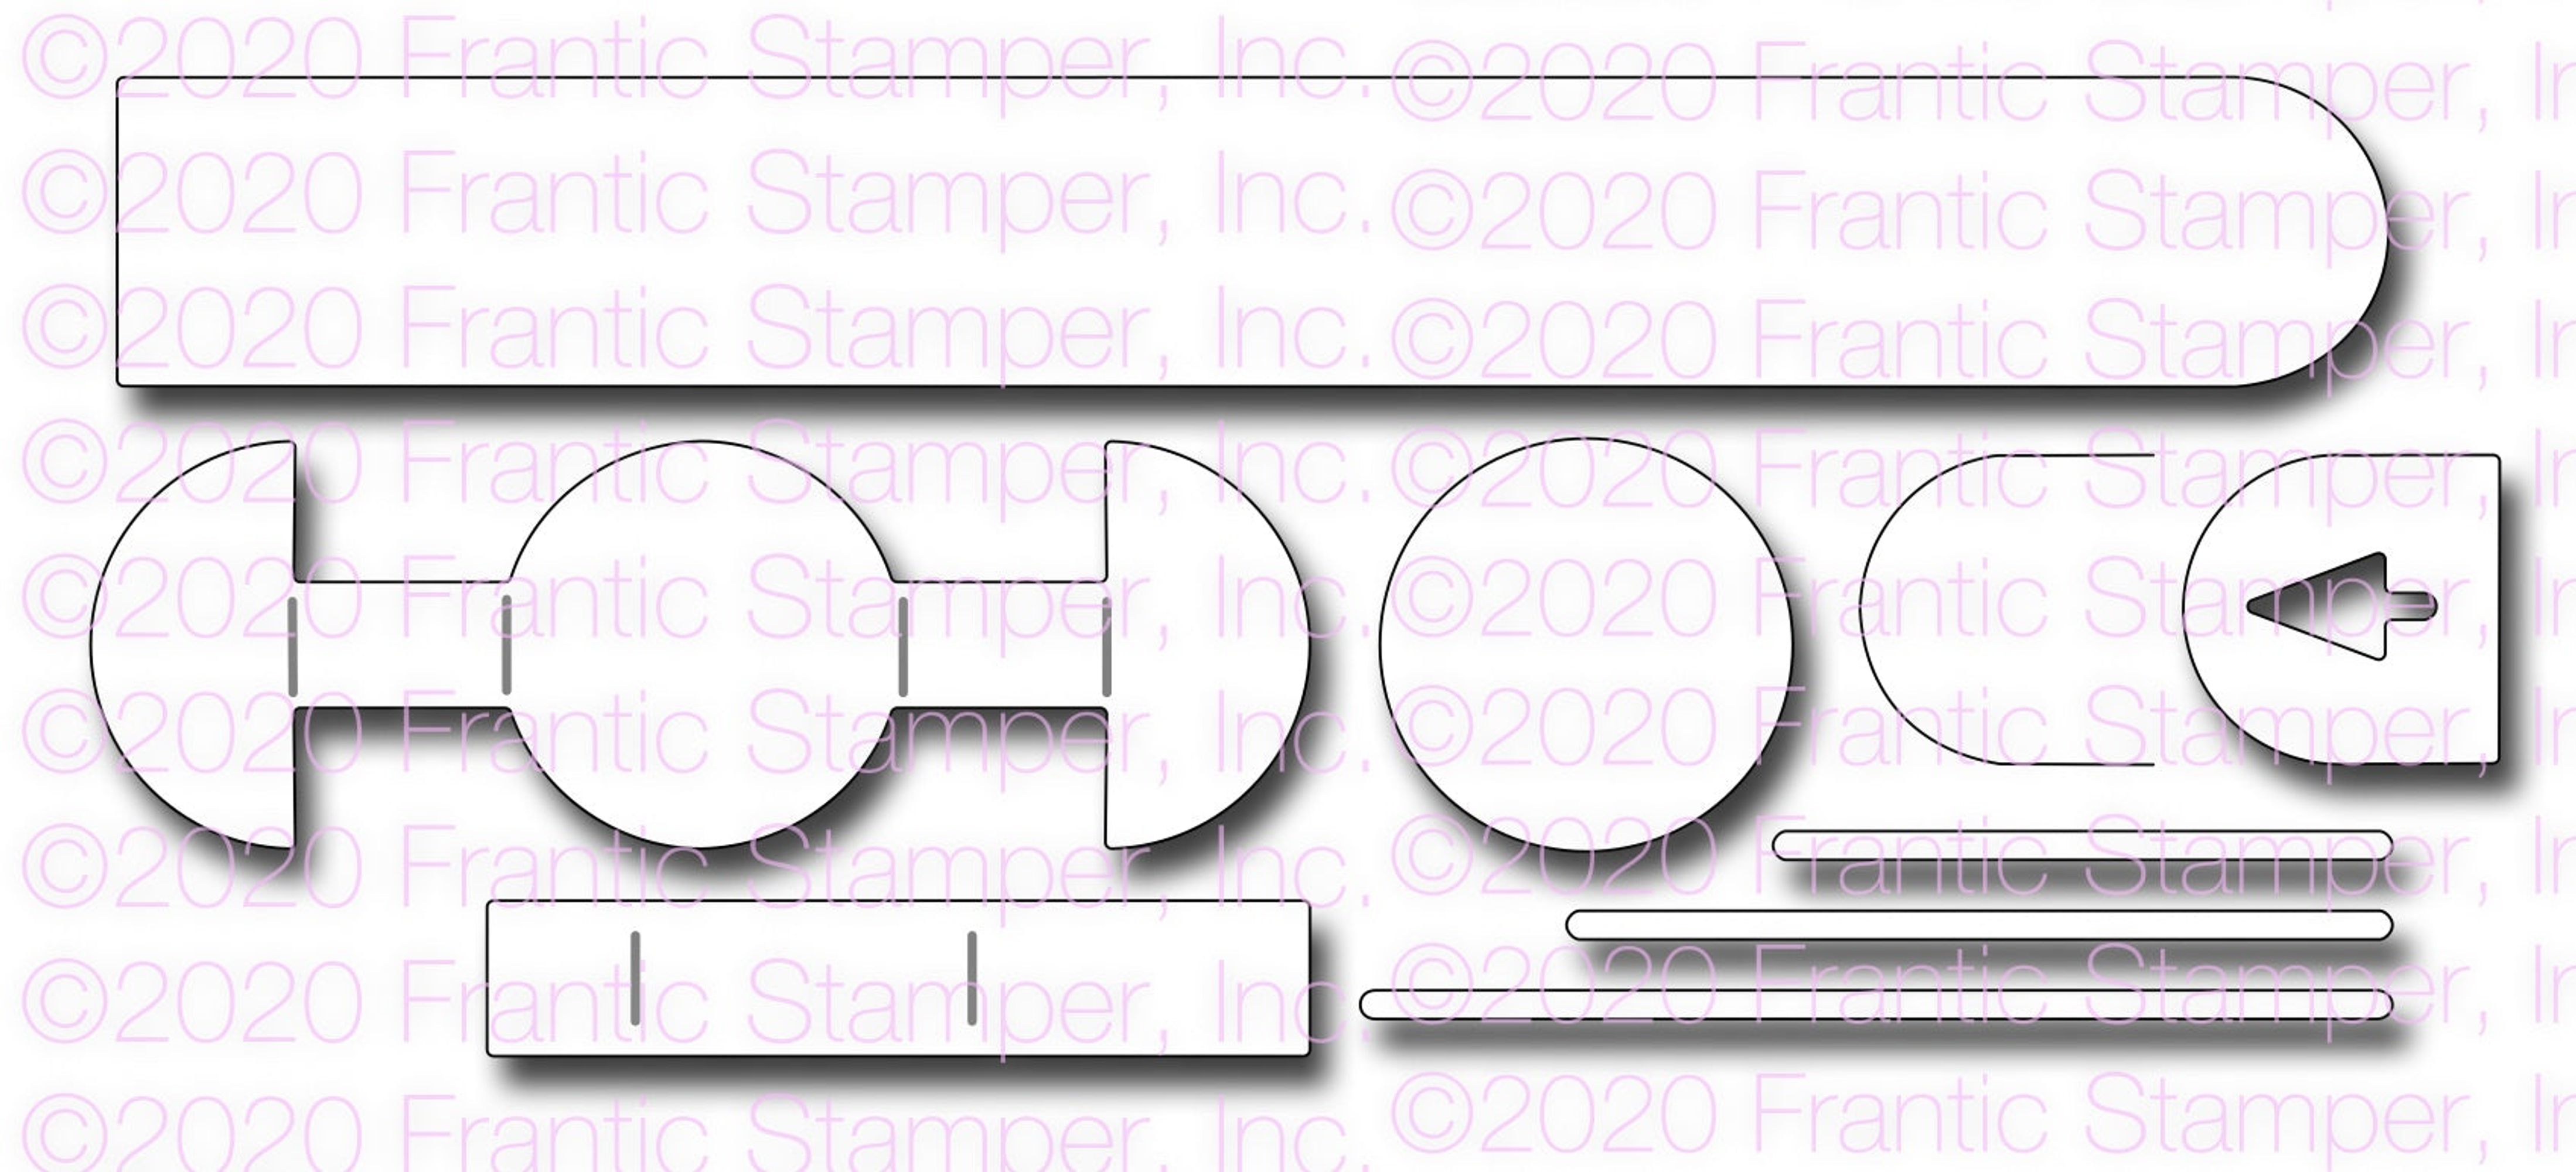 Frantic Stamper Precision Die - Interactive Slider Maker